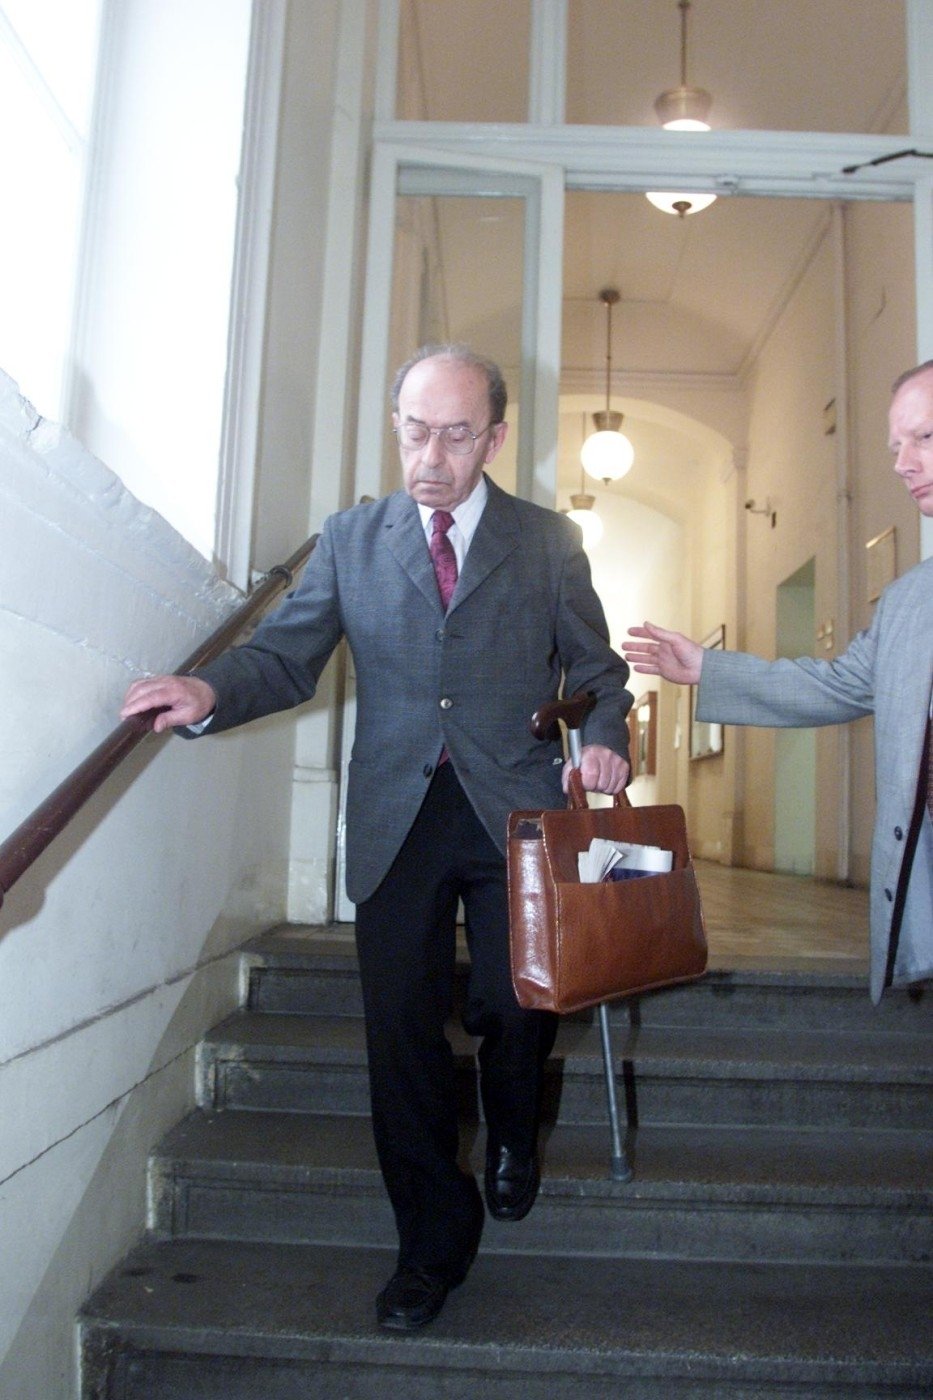 Komunistický prokurátor Karel Vaš byl zproštěn obvinění za justiční vraždu, případ byl podle soudu promlčený